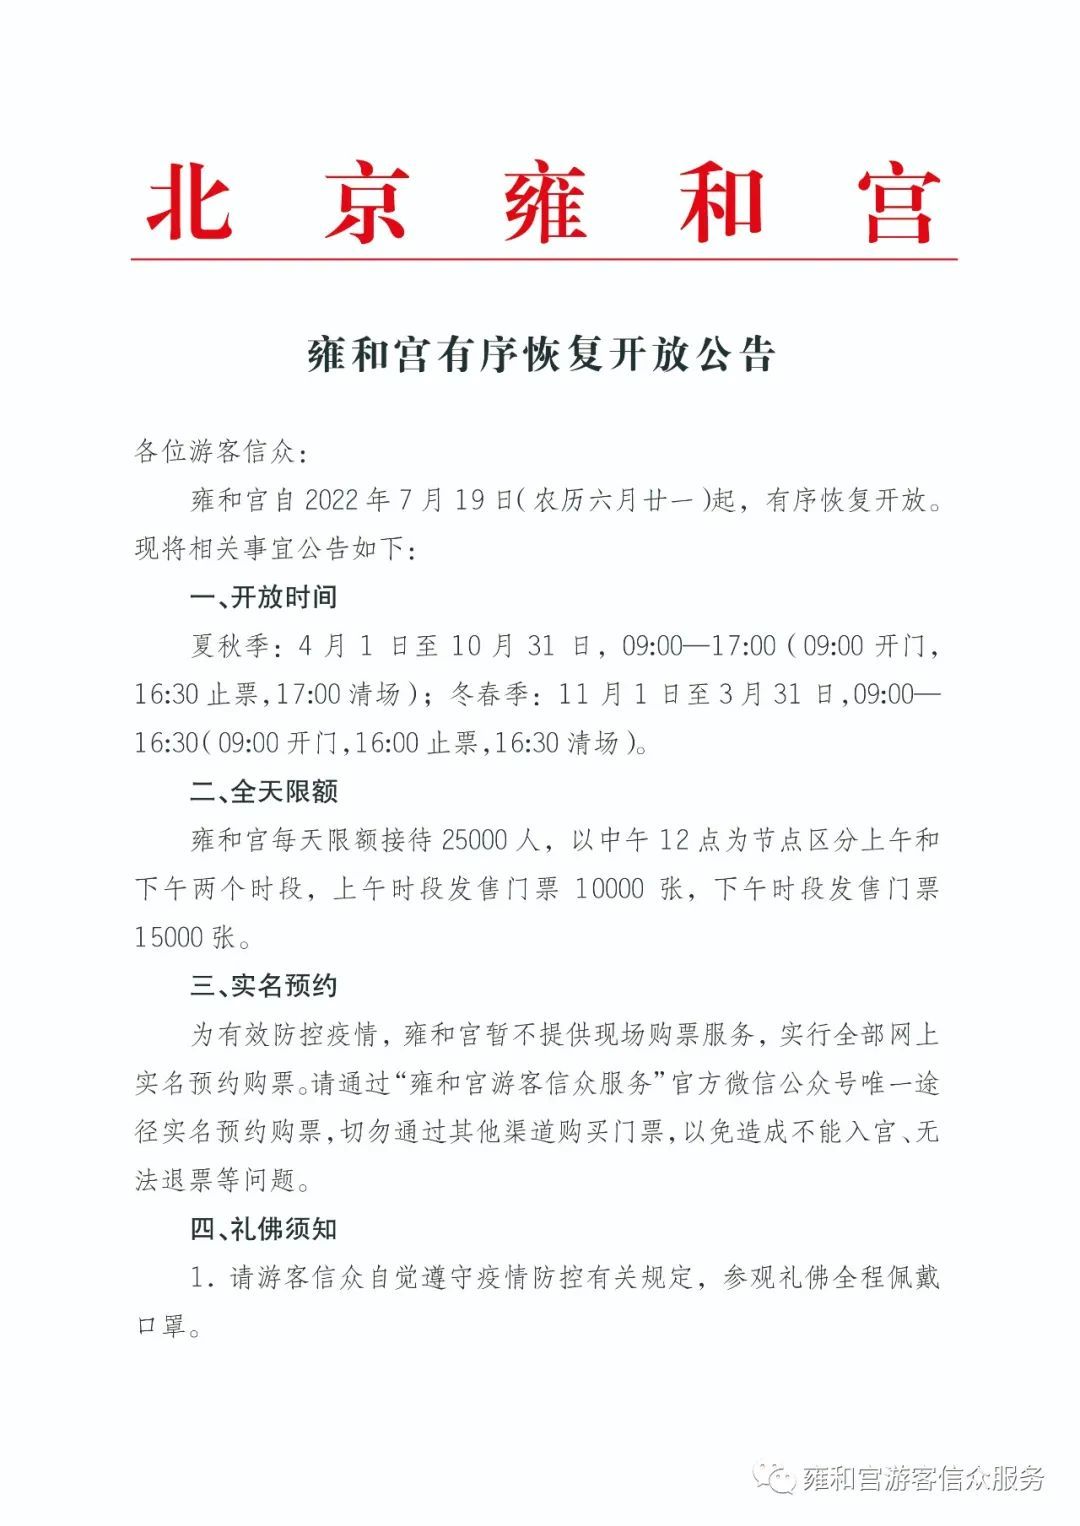 雍和宫7月19日起恢复开放 全部网上实名预约购票